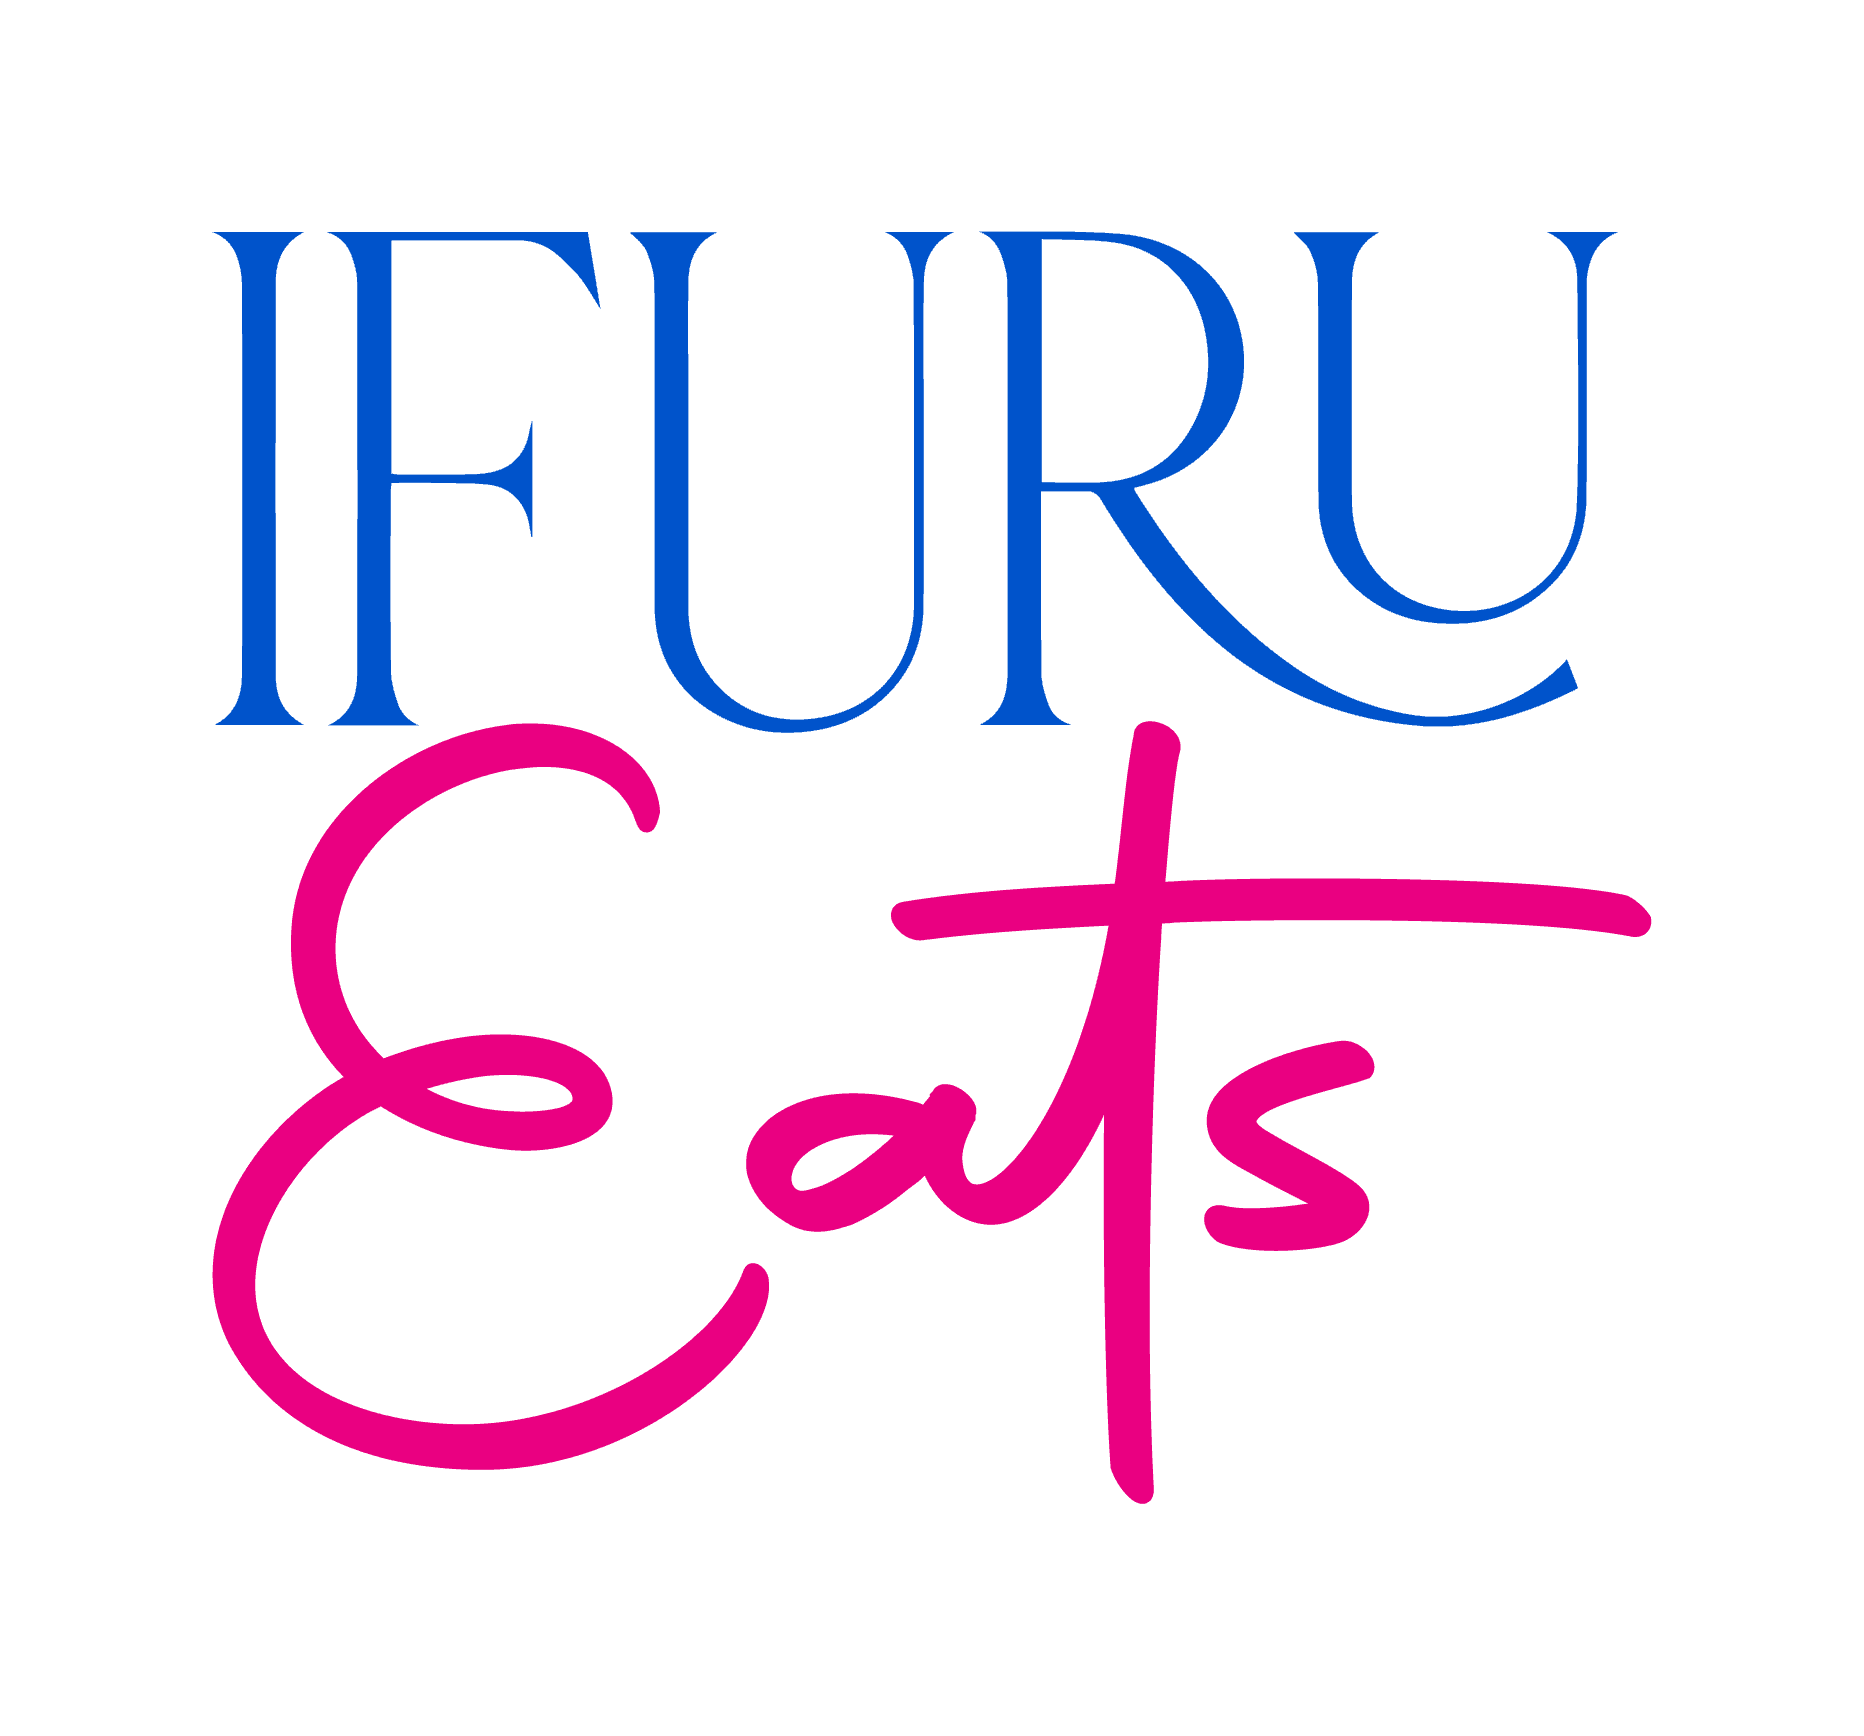 Official logo of Ifuru Eats used at Ifuru Island Maldives